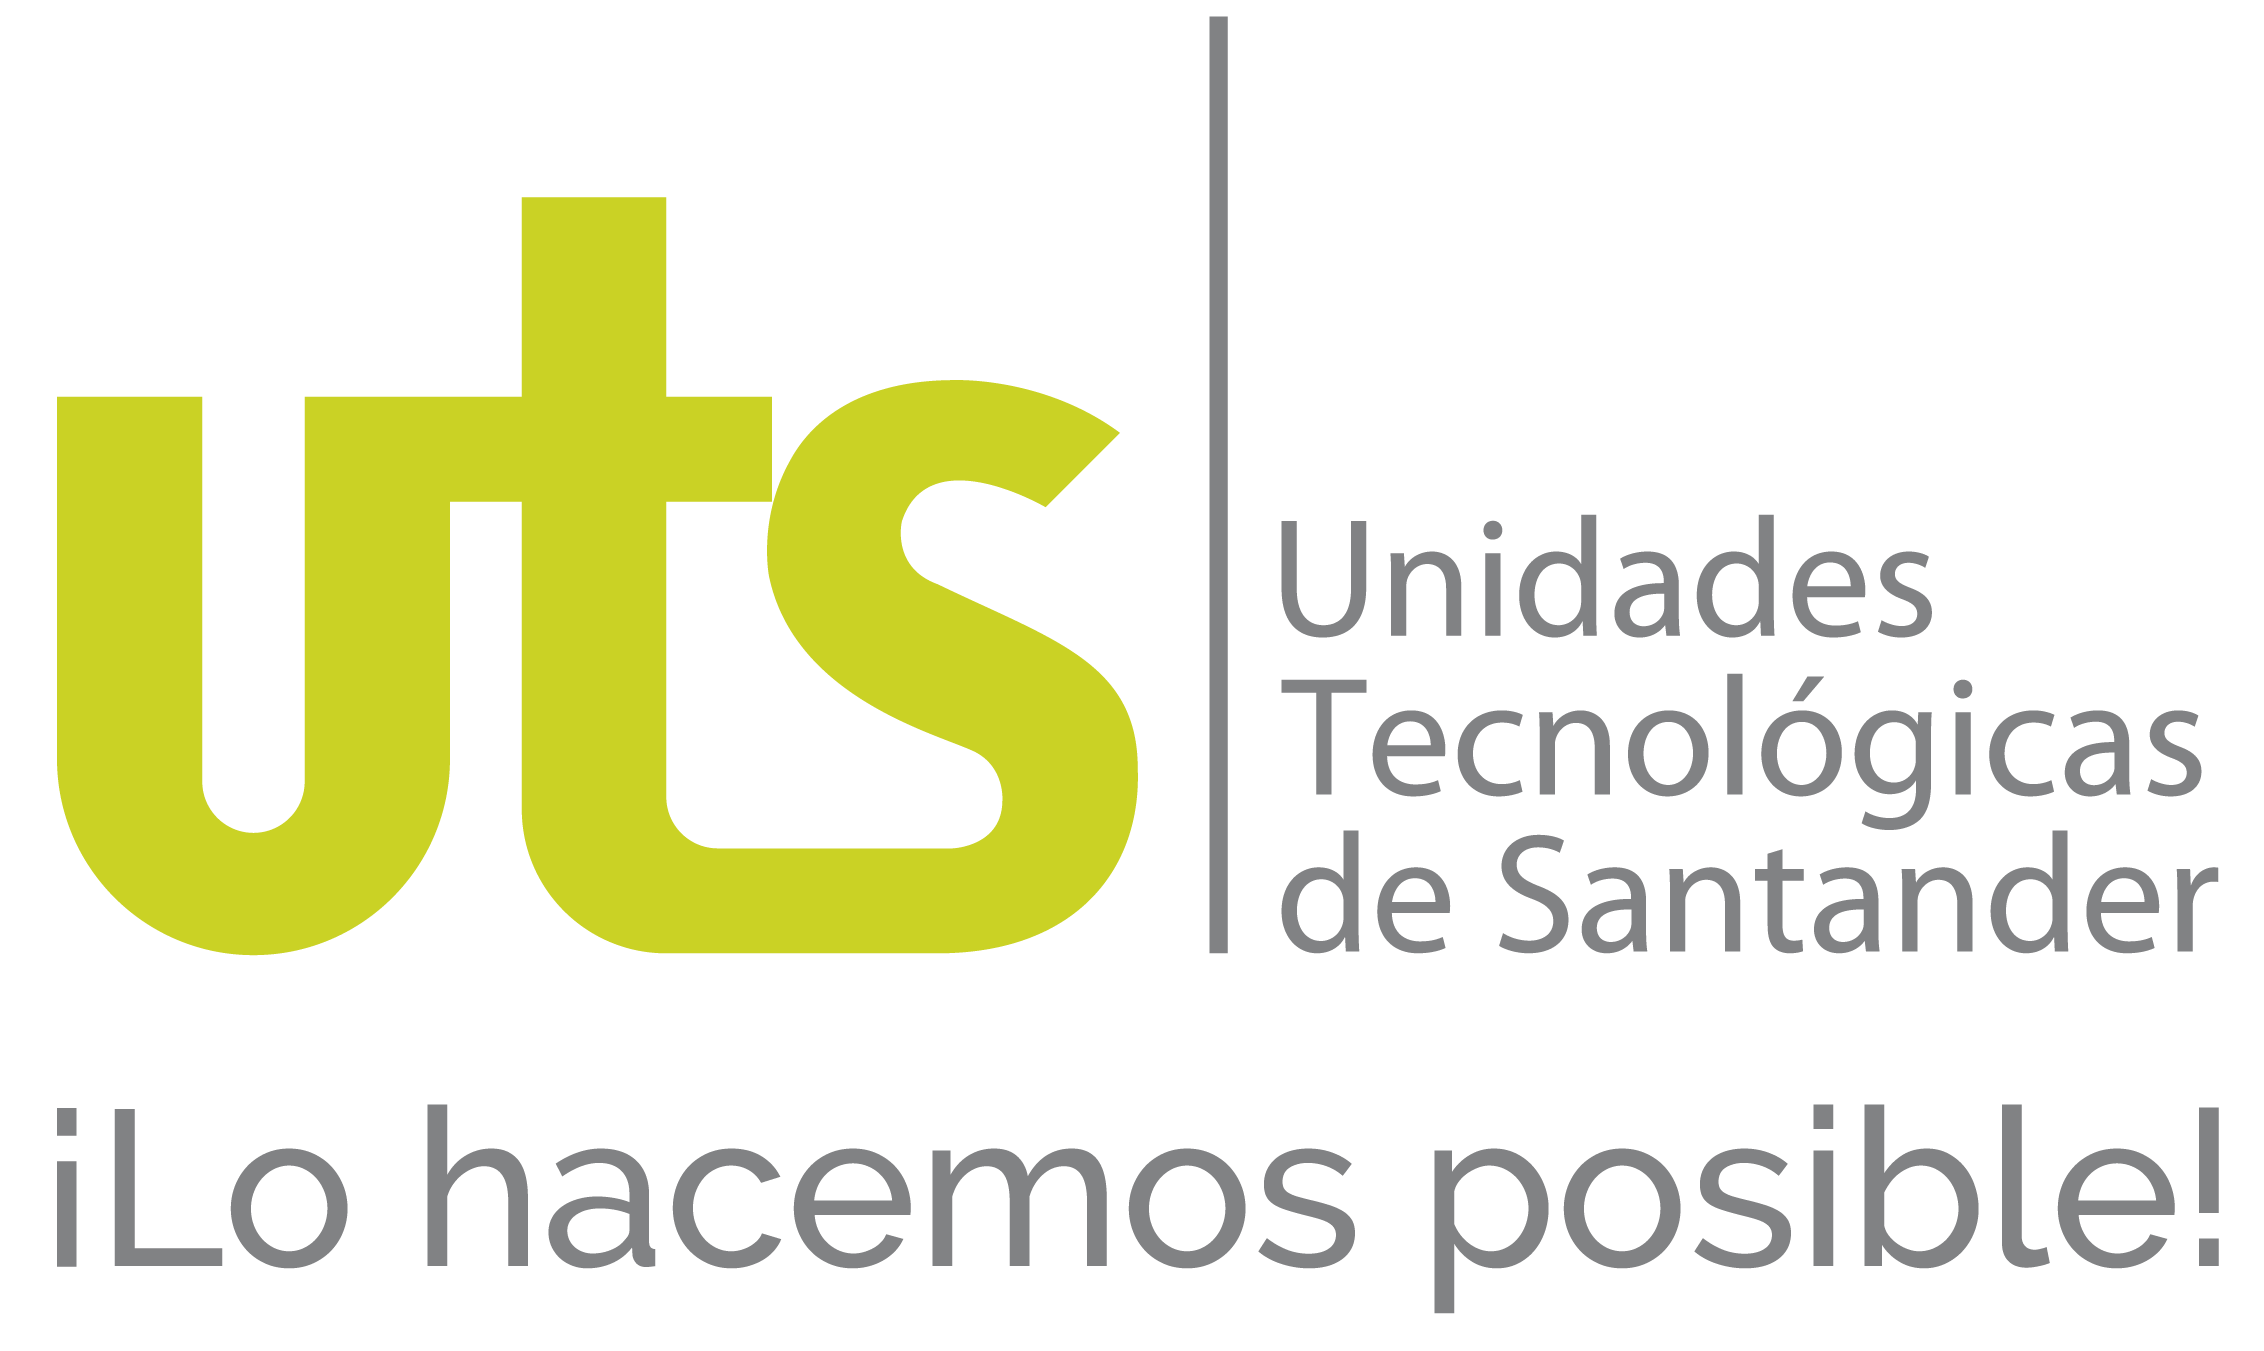 Unidades Tecnológicos de Santander